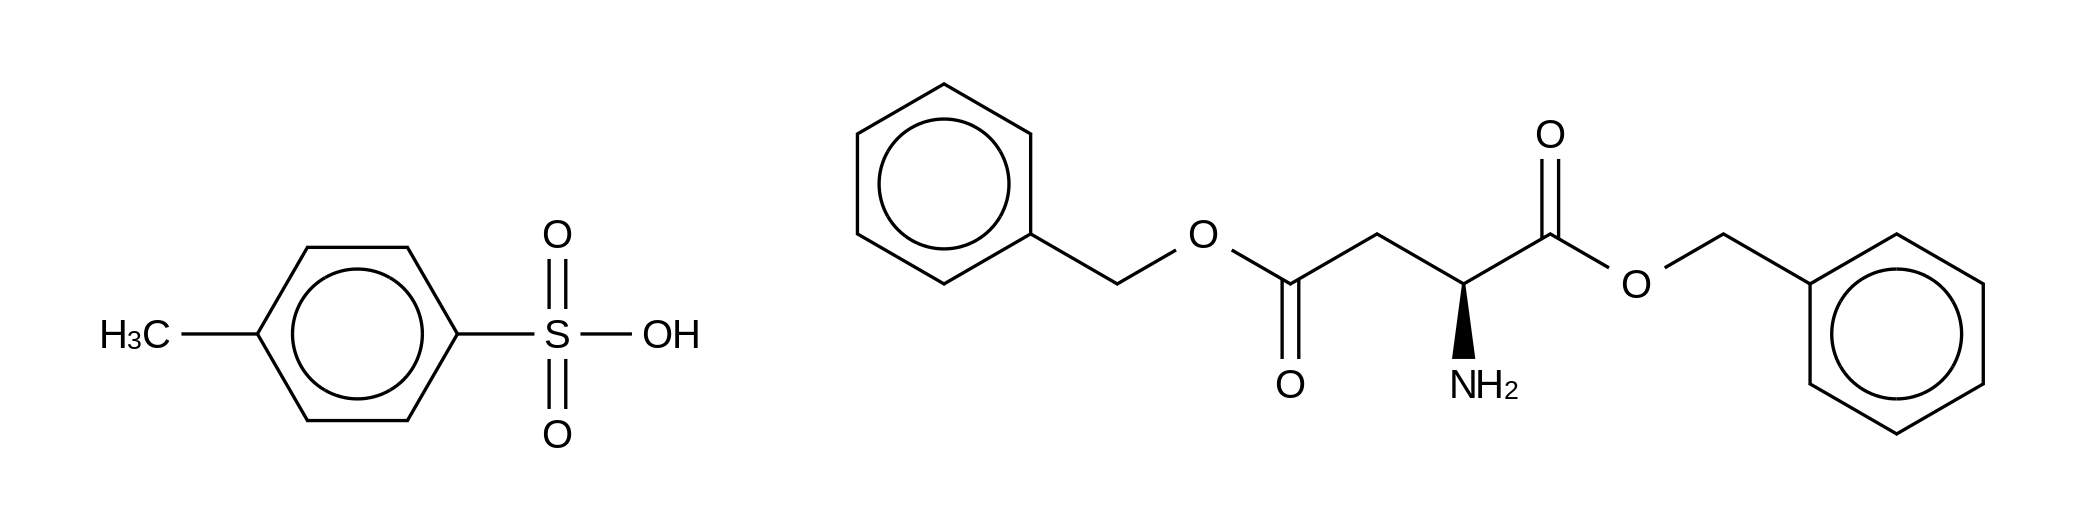 L-Aspartic Acid Dibenzyl Ester p-Toluenesulfonate Salt